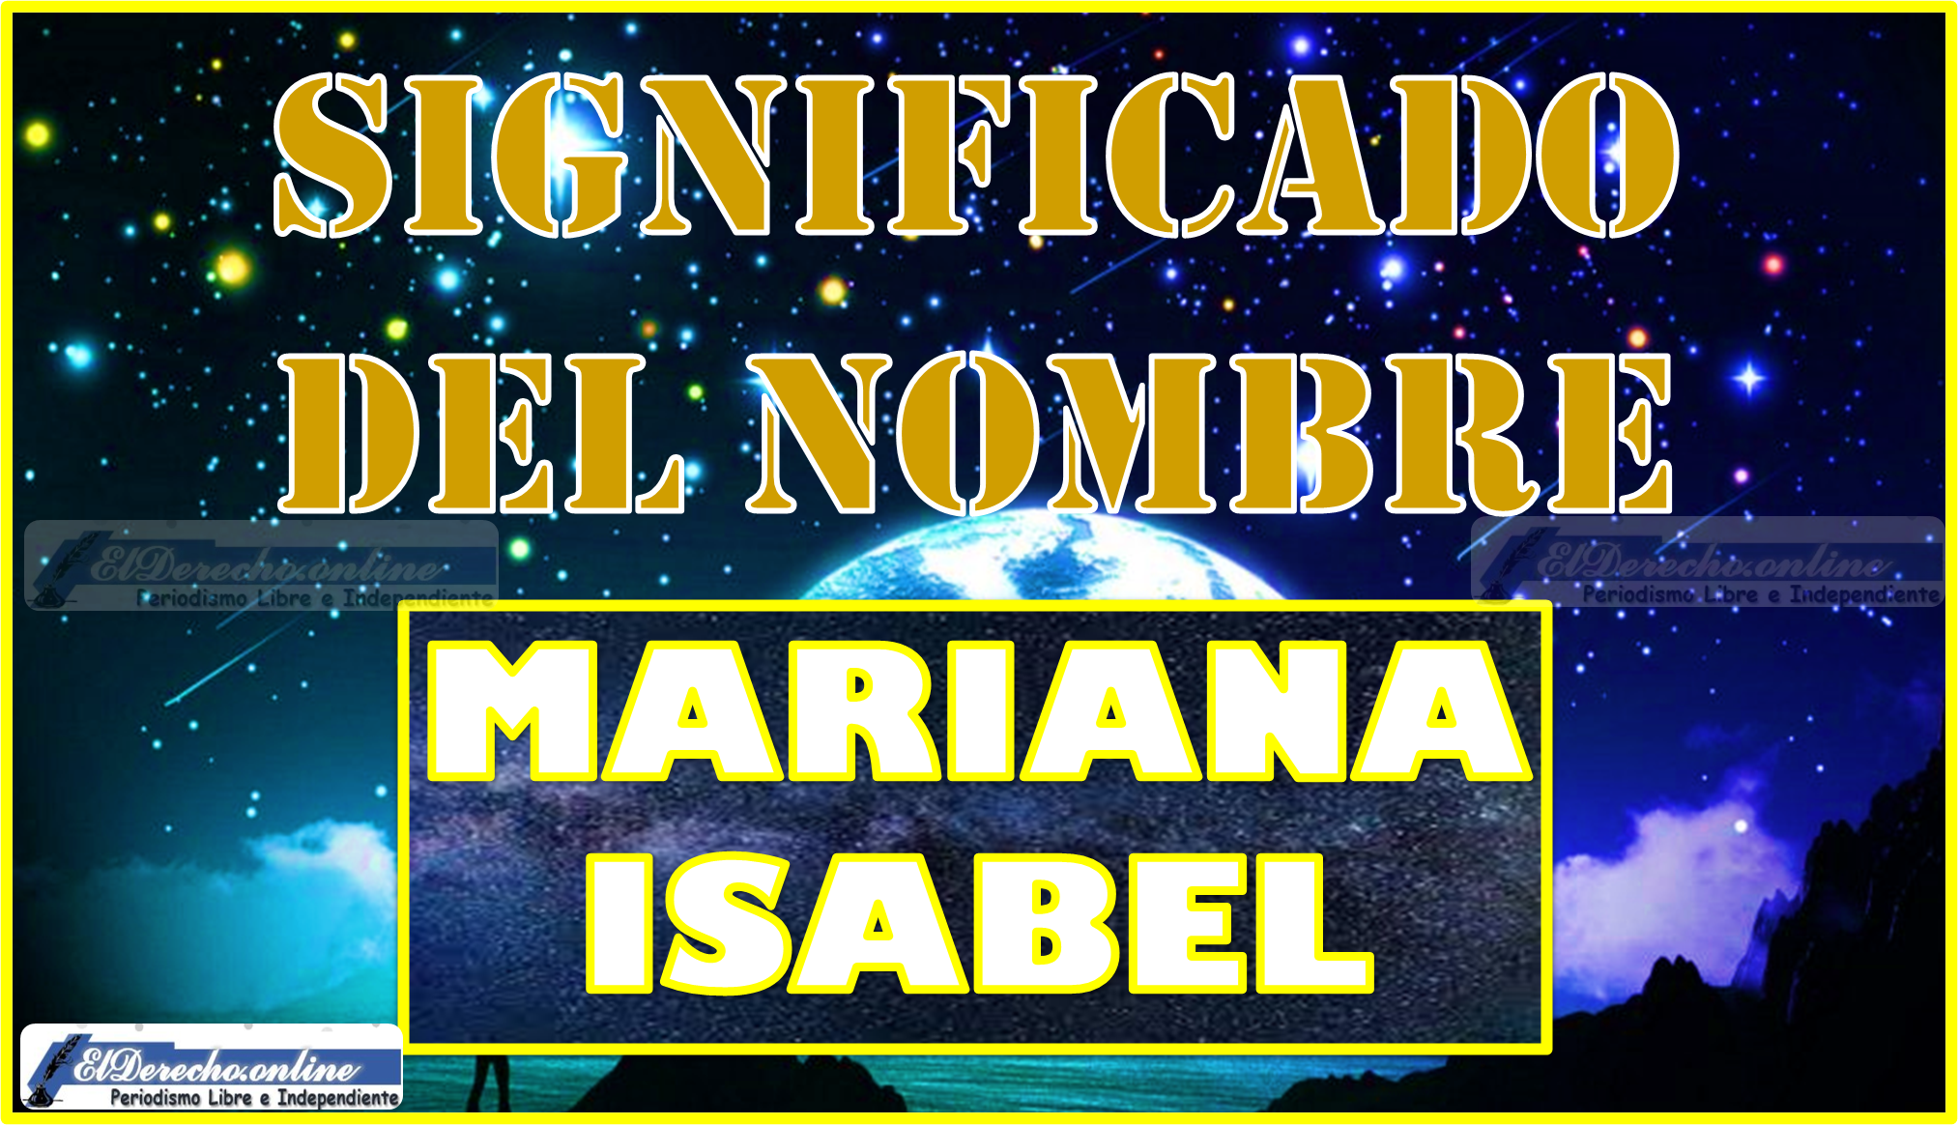 Significado del nombre Mariana Isabel, su origen y más